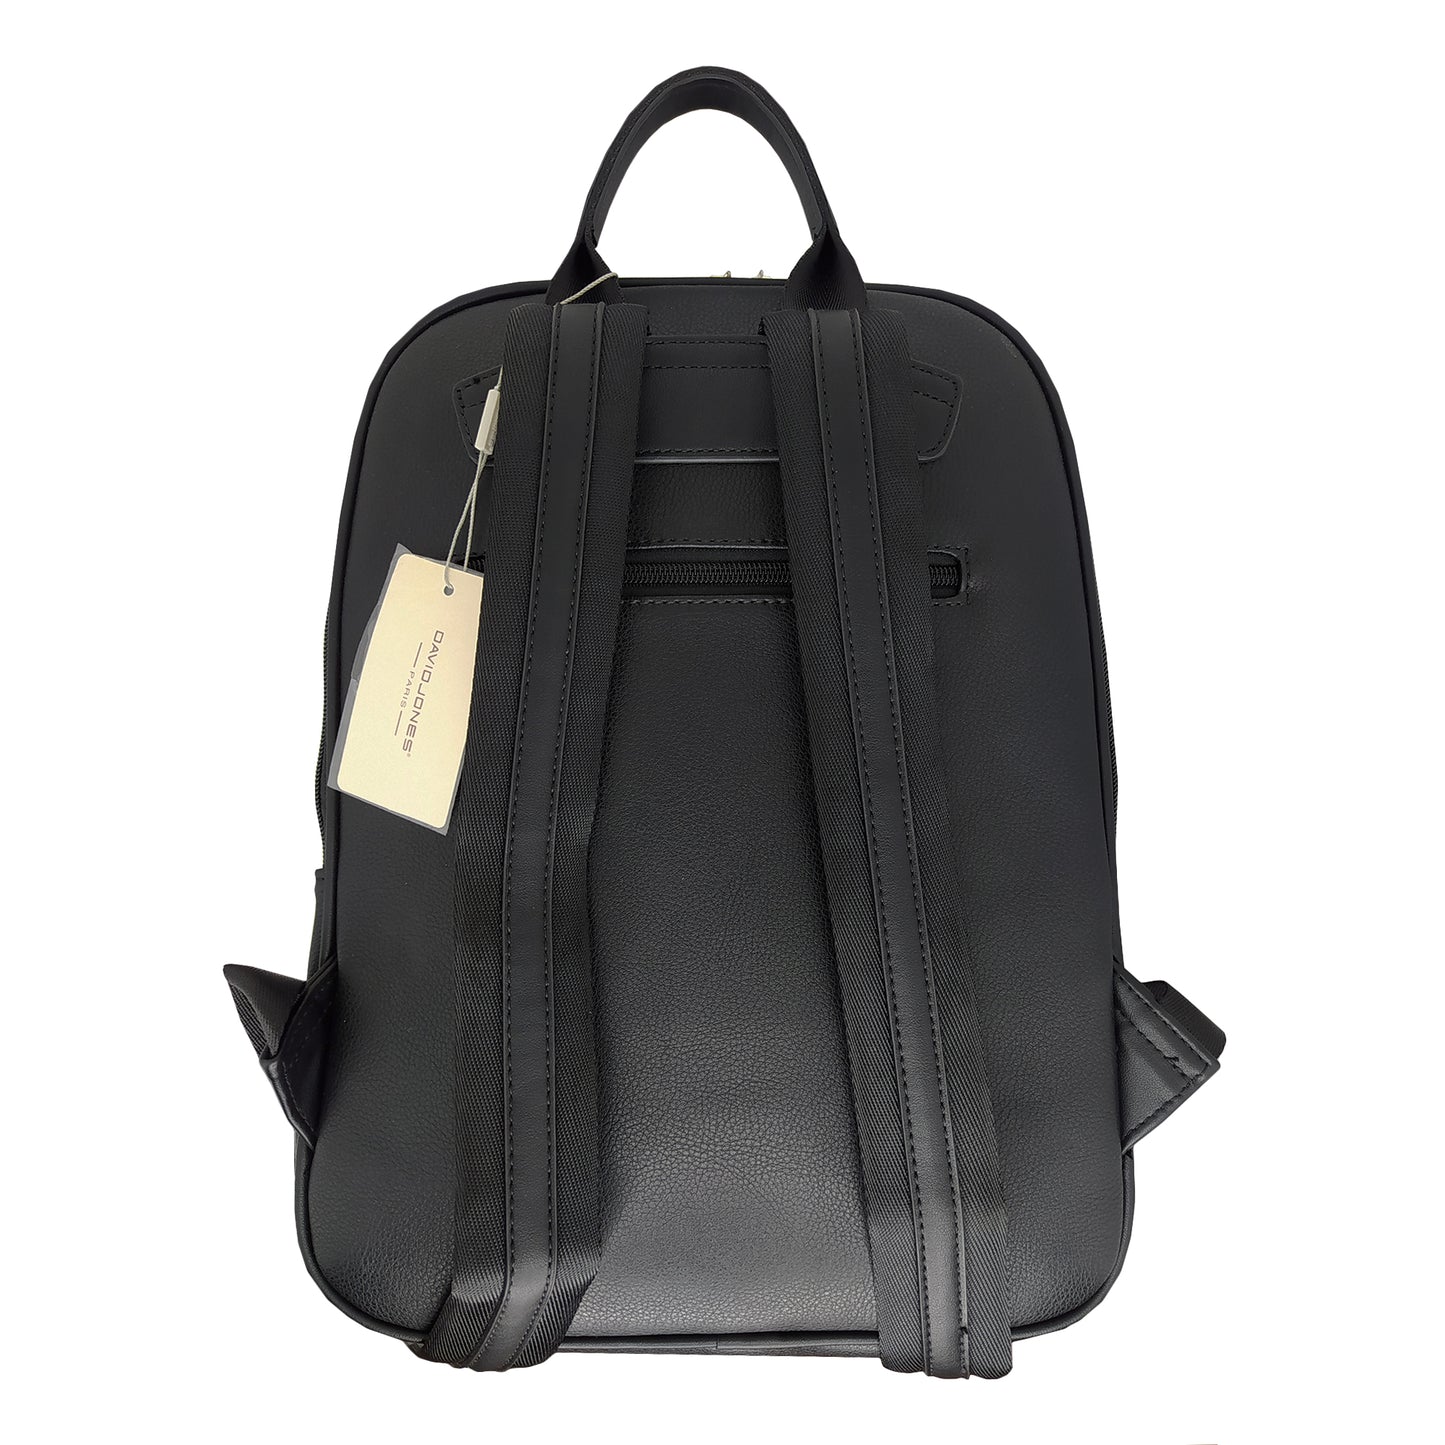 Backpack Bag Black 798803 BLACK